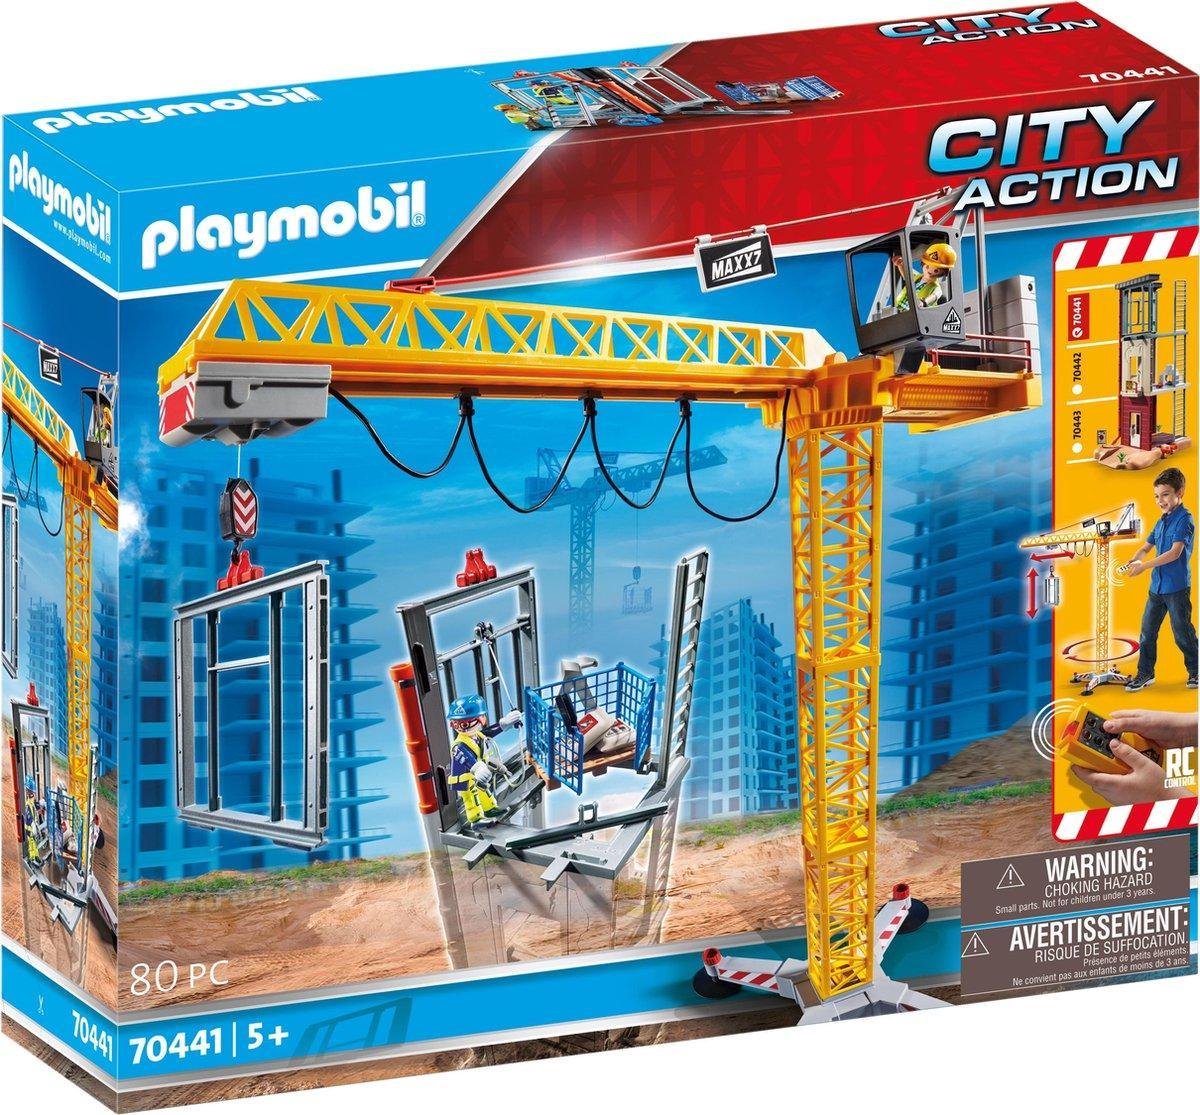 PLAYMOBIL City Action RC bouwkraan met bouwonderdeel - 70441